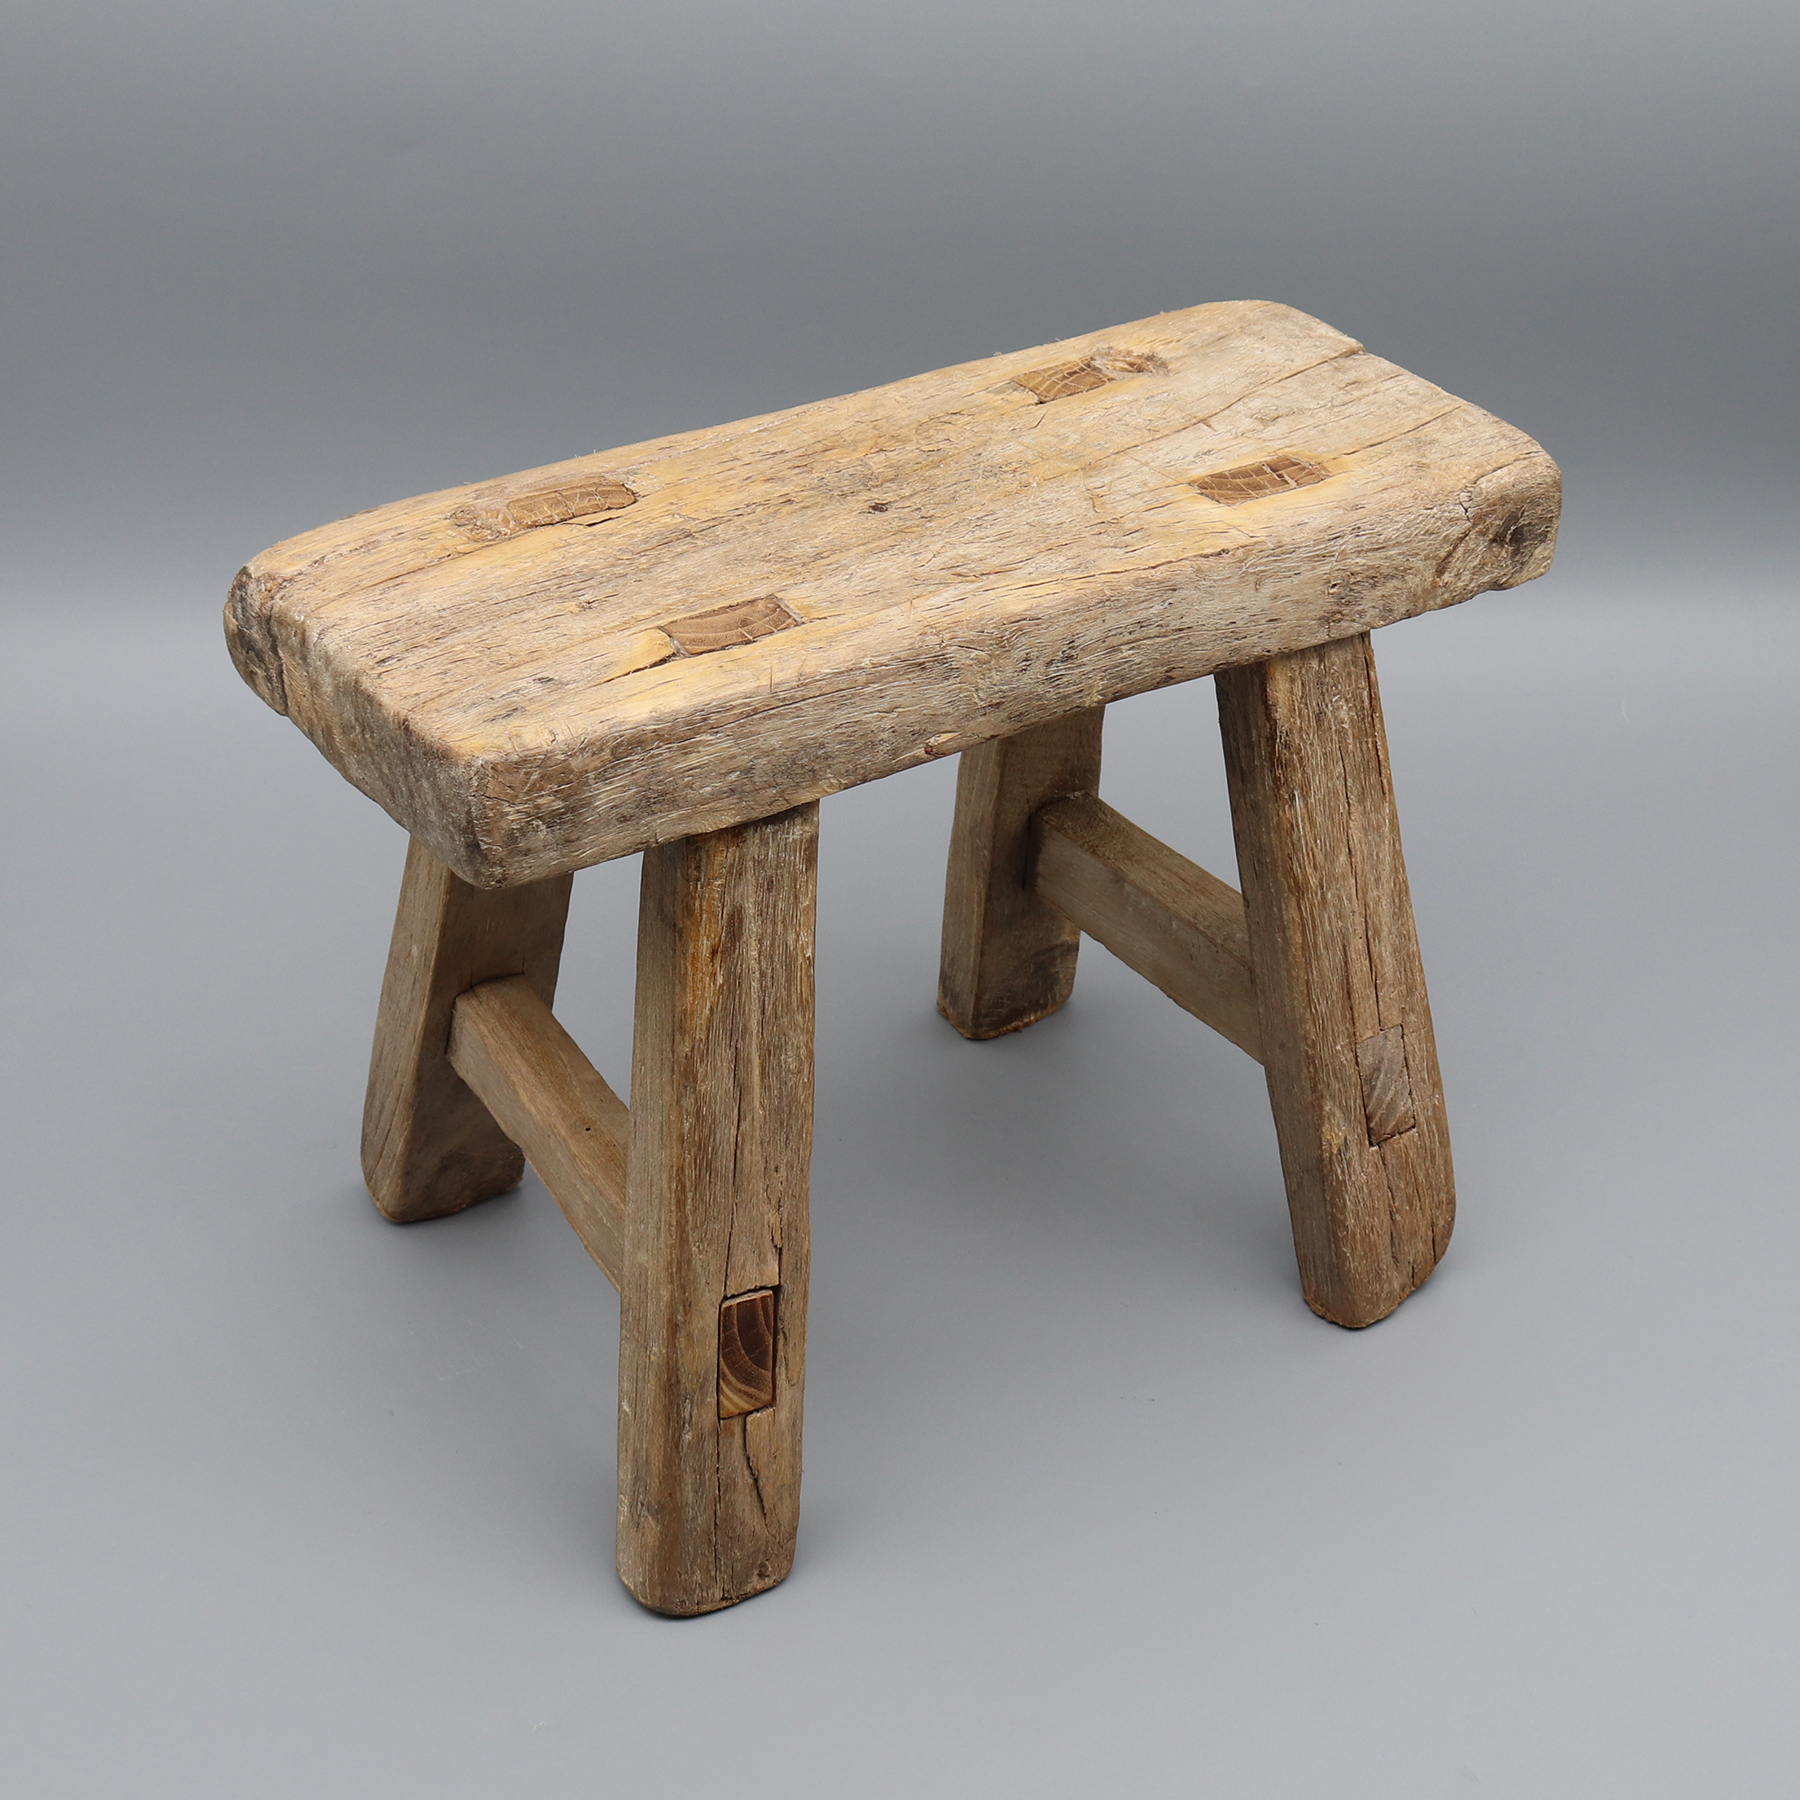 Антикварный деревянный табурет, врезной и шипованный, небольшой столик, подставка для растений, массив дерева